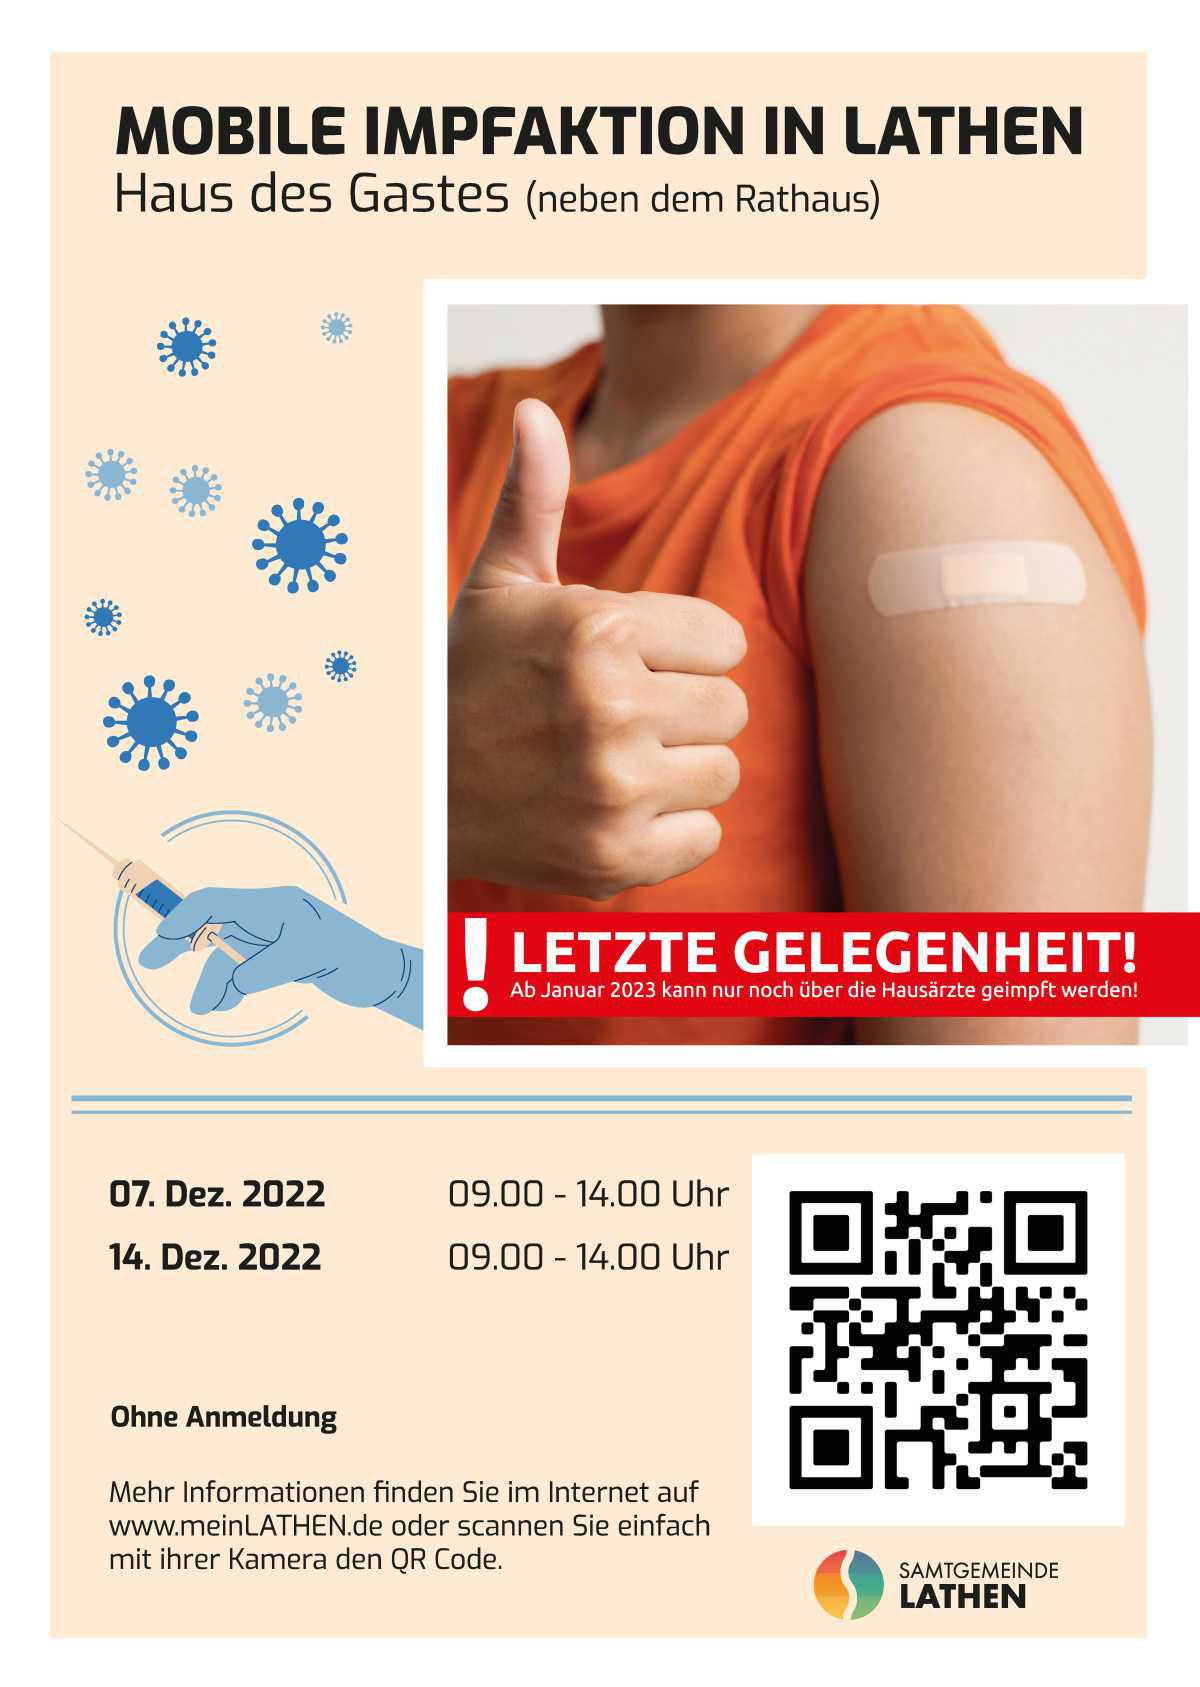 Mobile Impfaktion in Lathen - letzte Gelegenheit! Danach ist das Impfen nur noch über den Hausarzt möglich!